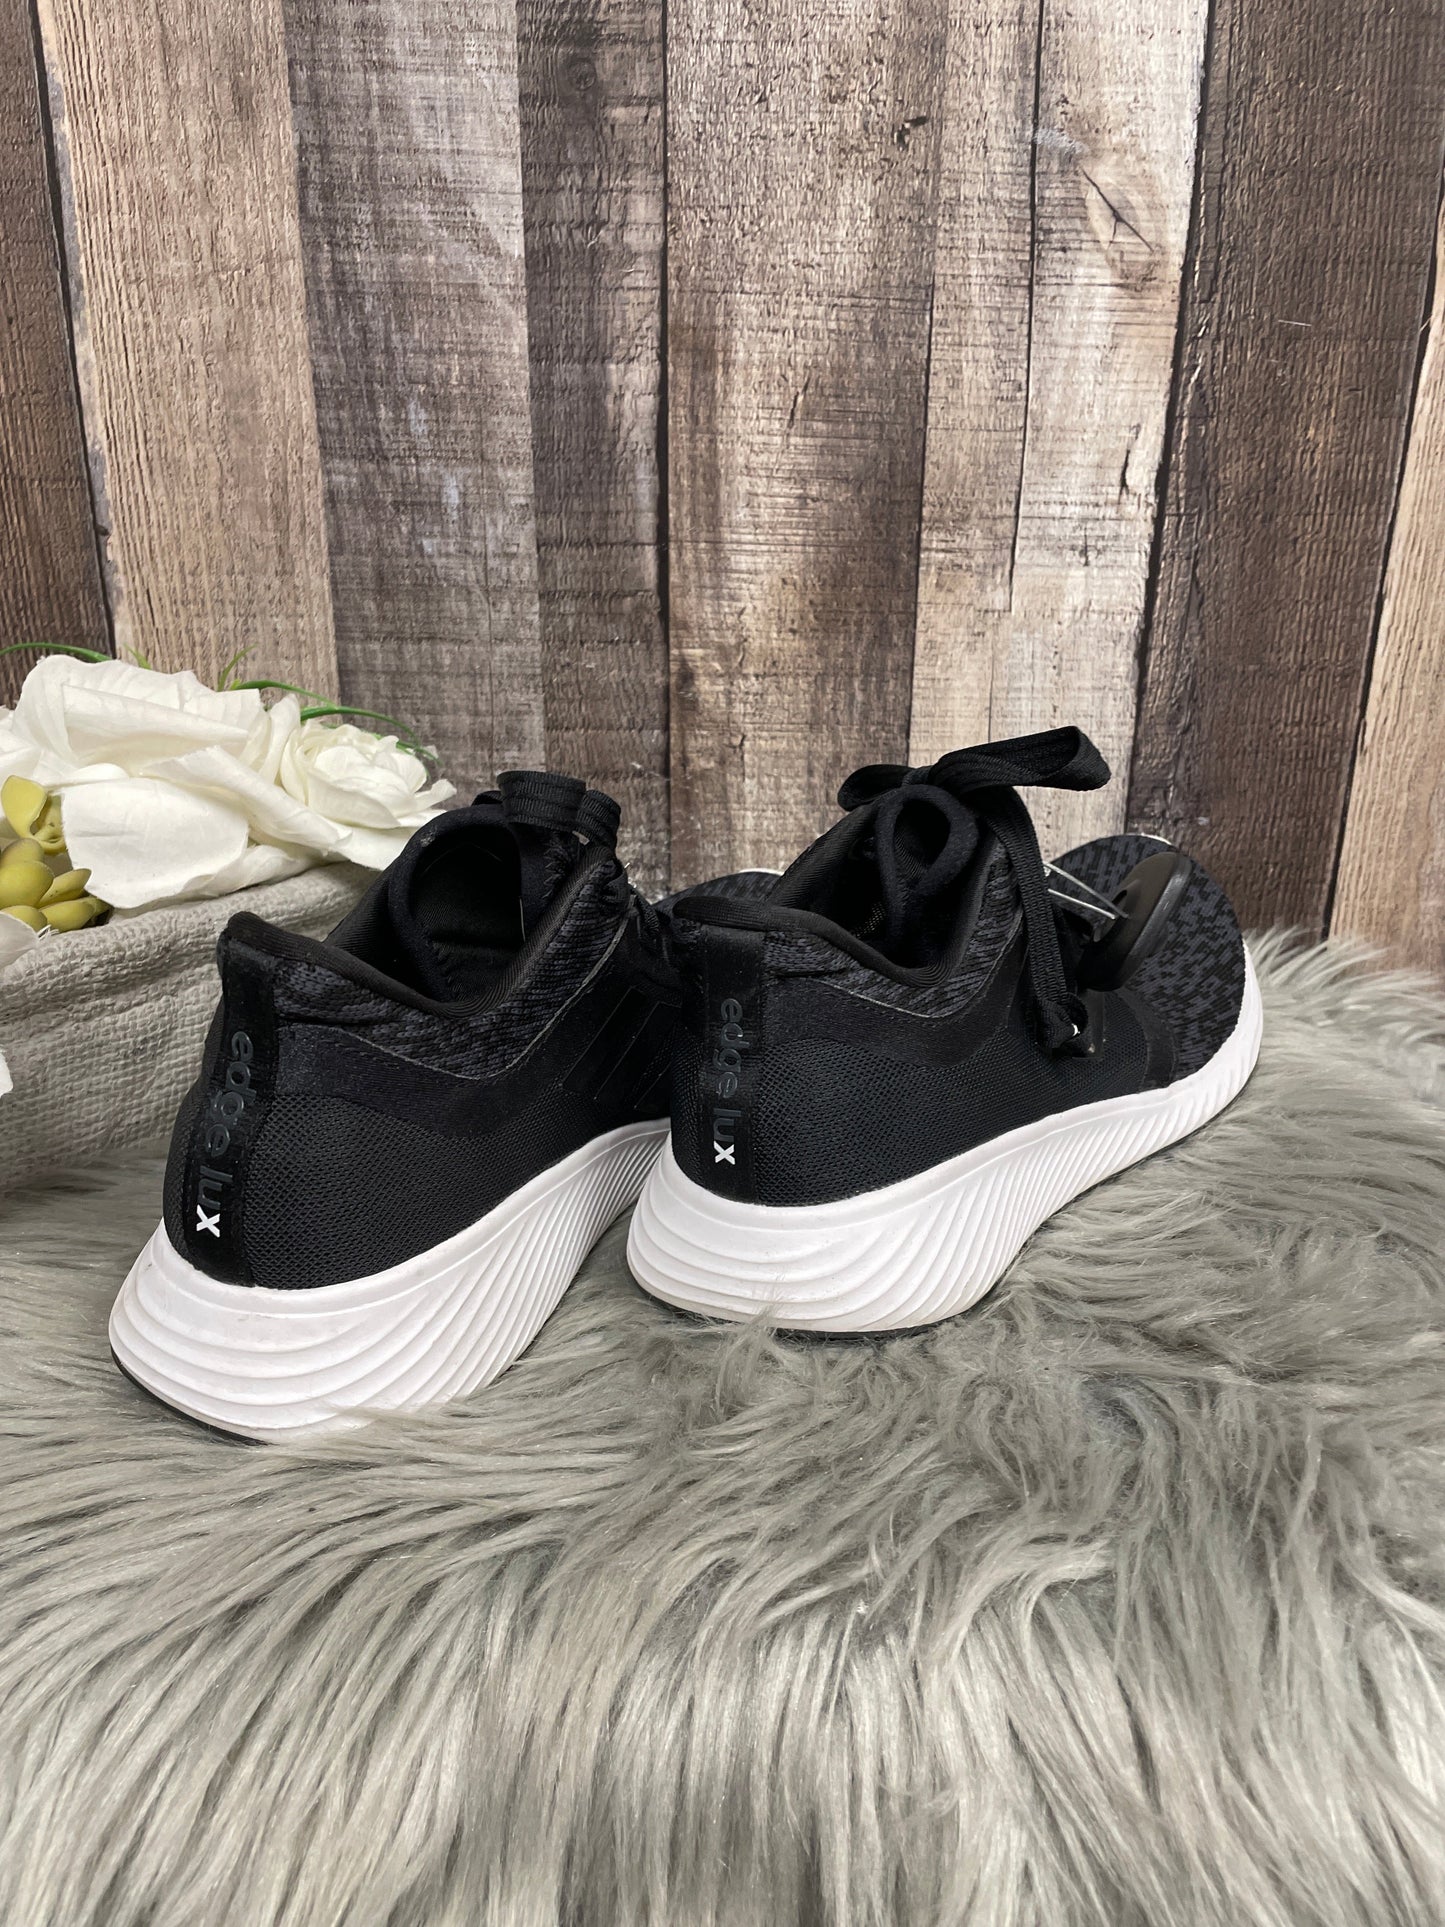 Black Shoes Athletic Adidas, Size 8.5